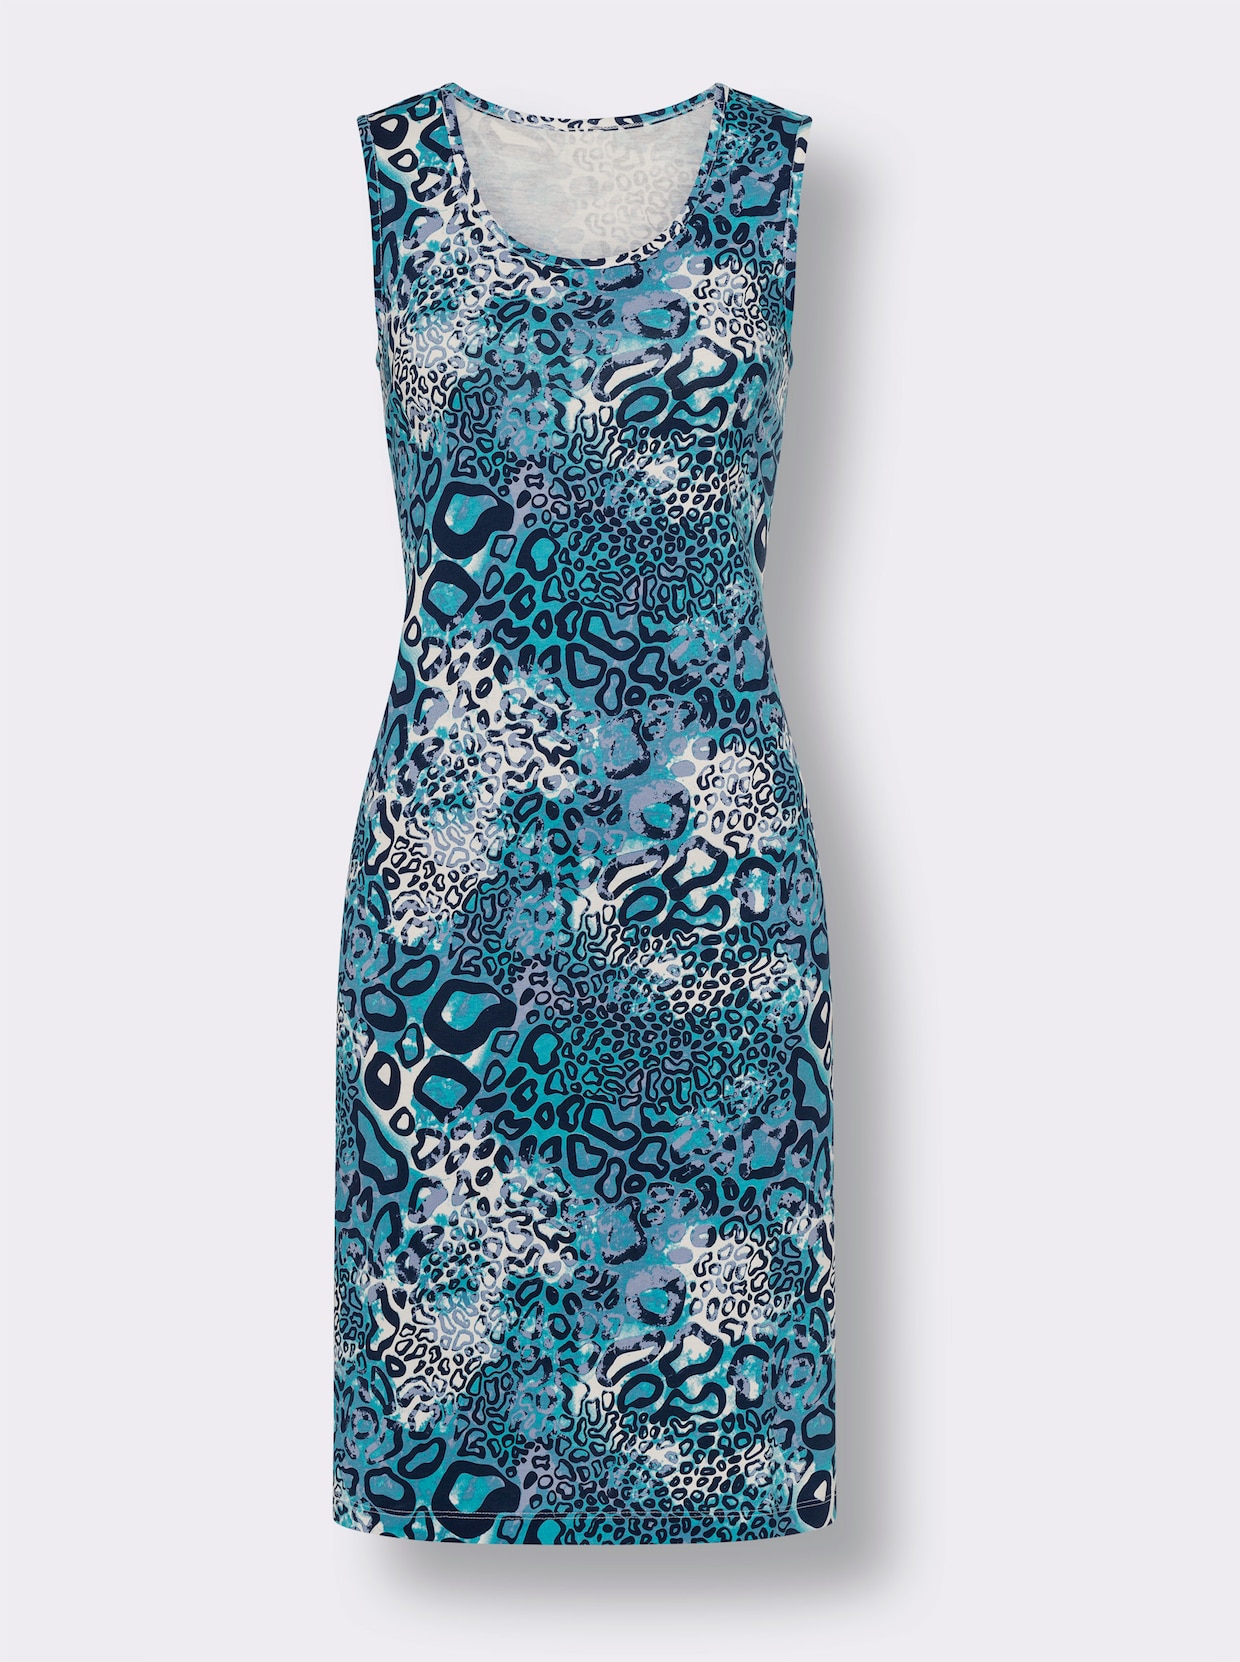 Letné šaty - Bledomodro-tyrkysová potlač